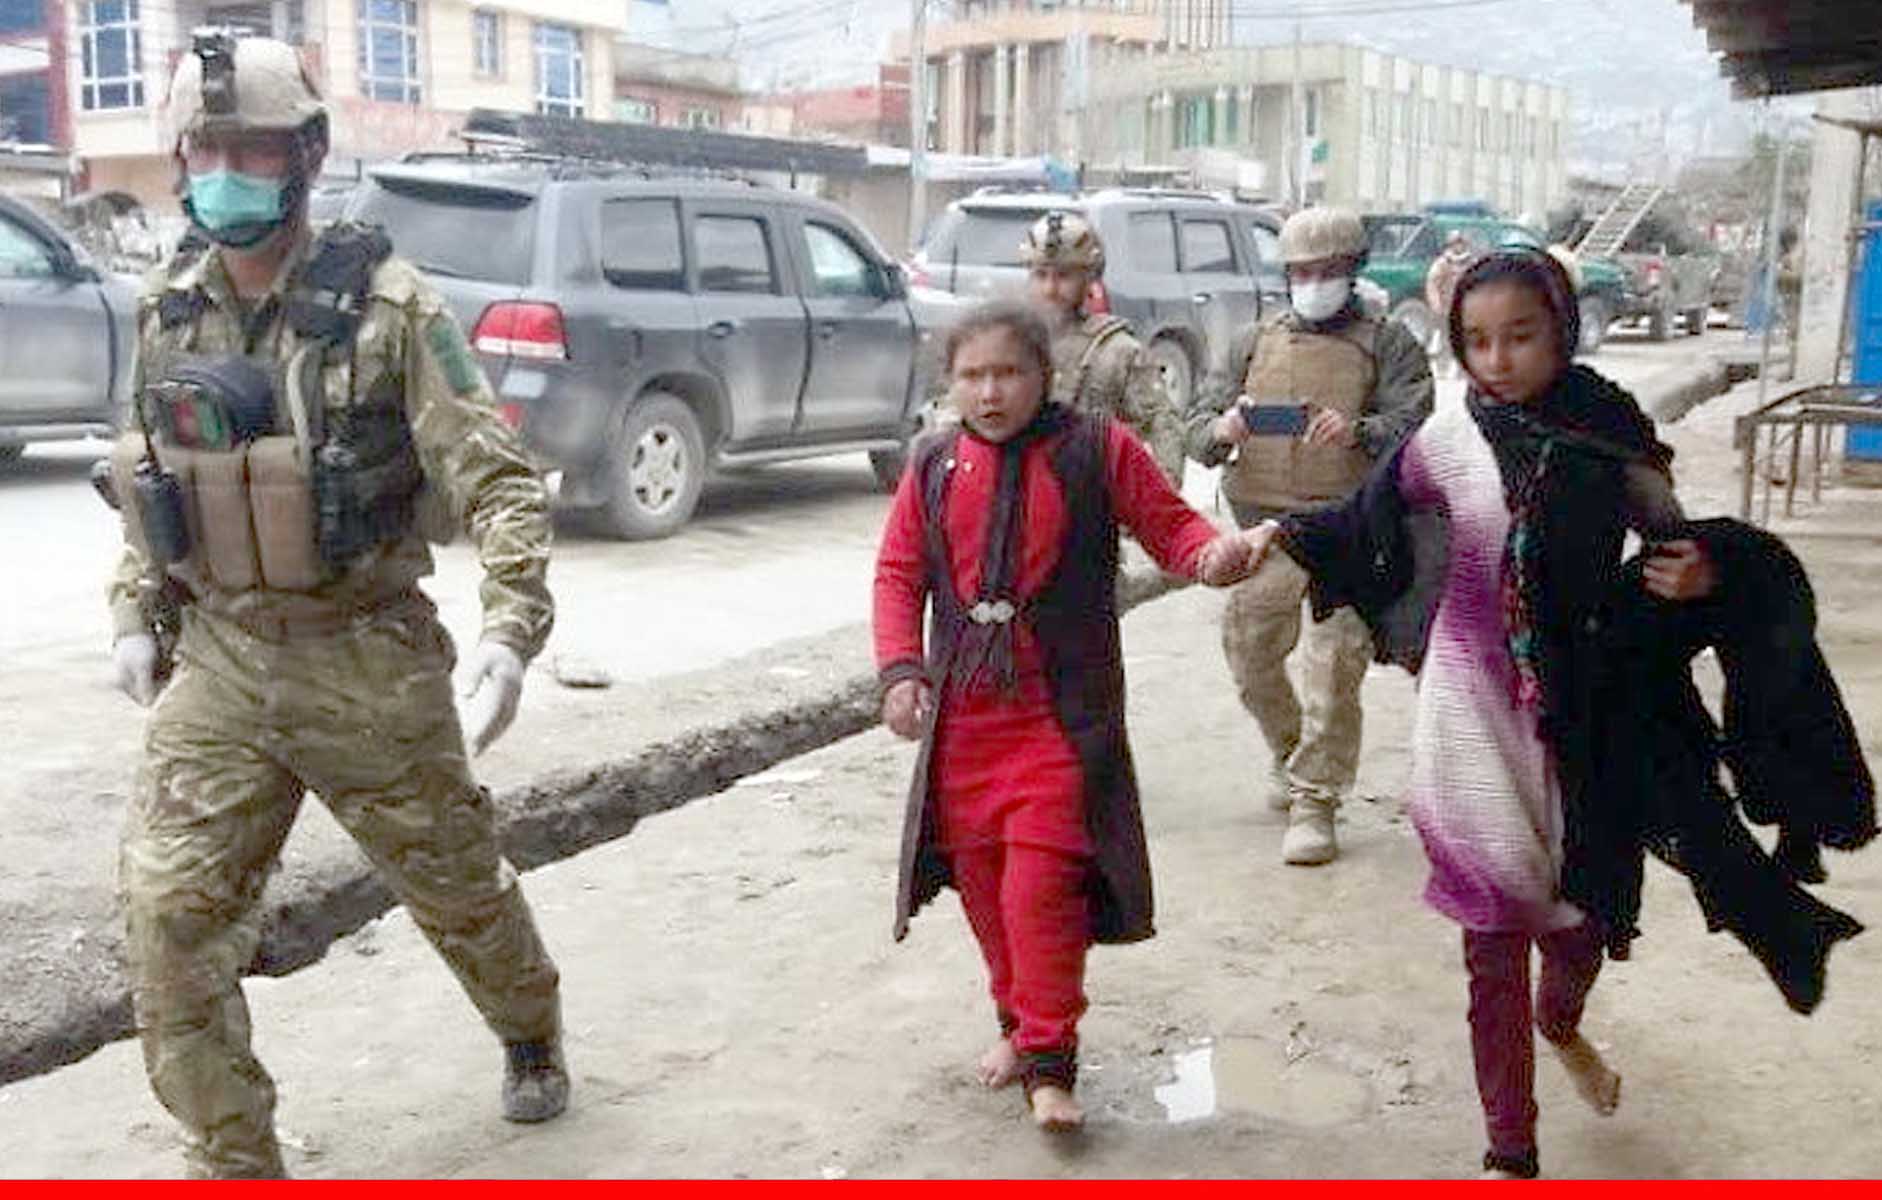 अफगान हिंदू और सिख समुदाय की अंतरराष्ट्रीय समुदाय से अपील- हमें बचा लें